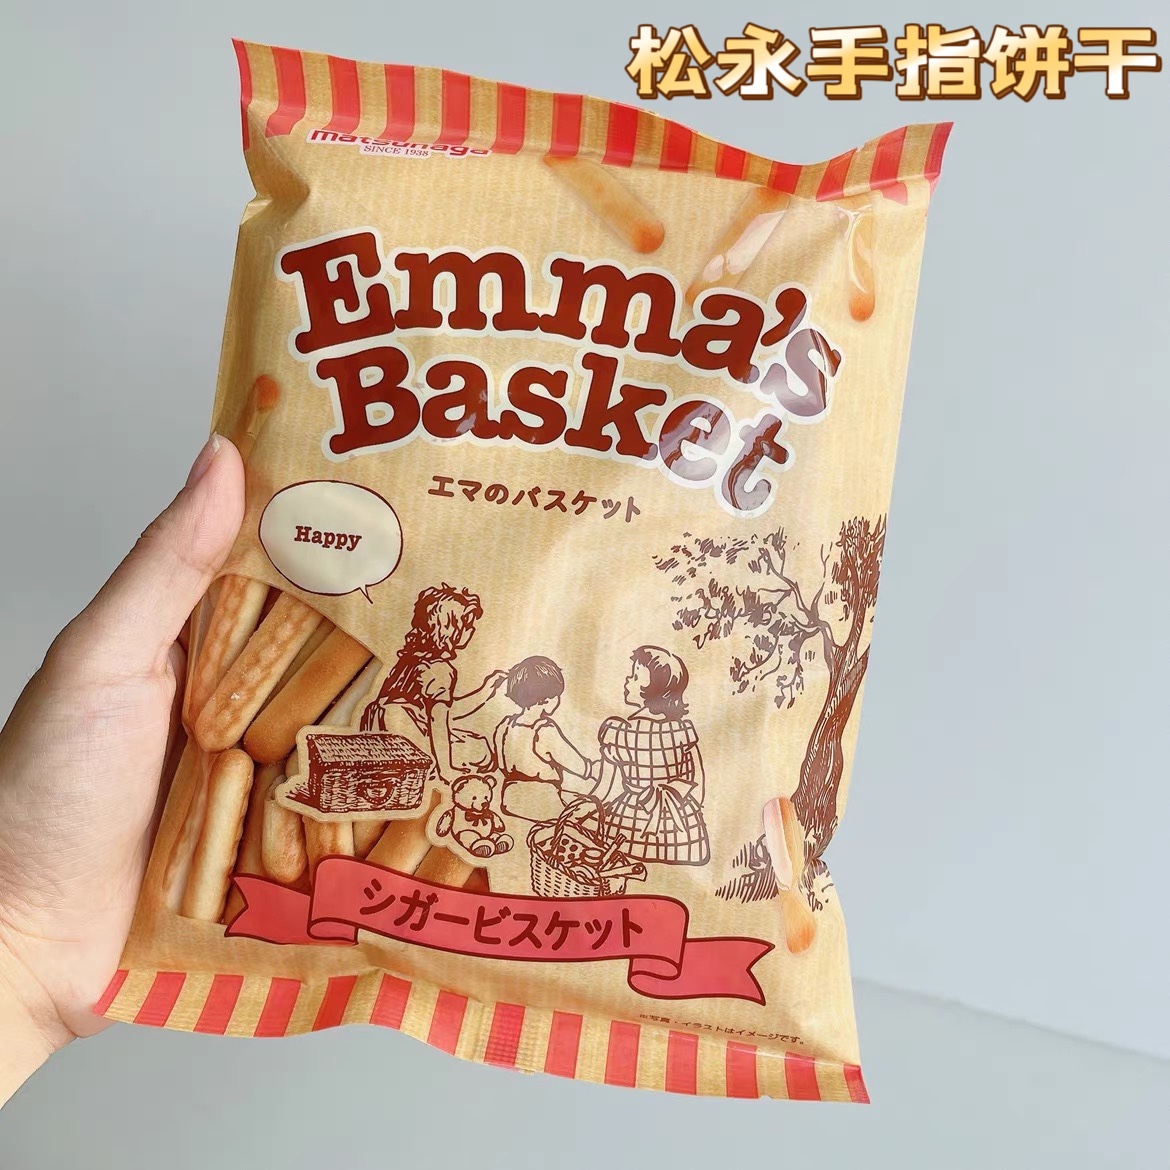 日本进口零食松永手指饼干淡盐味小麦儿童宝宝酥脆长条小饼干袋装